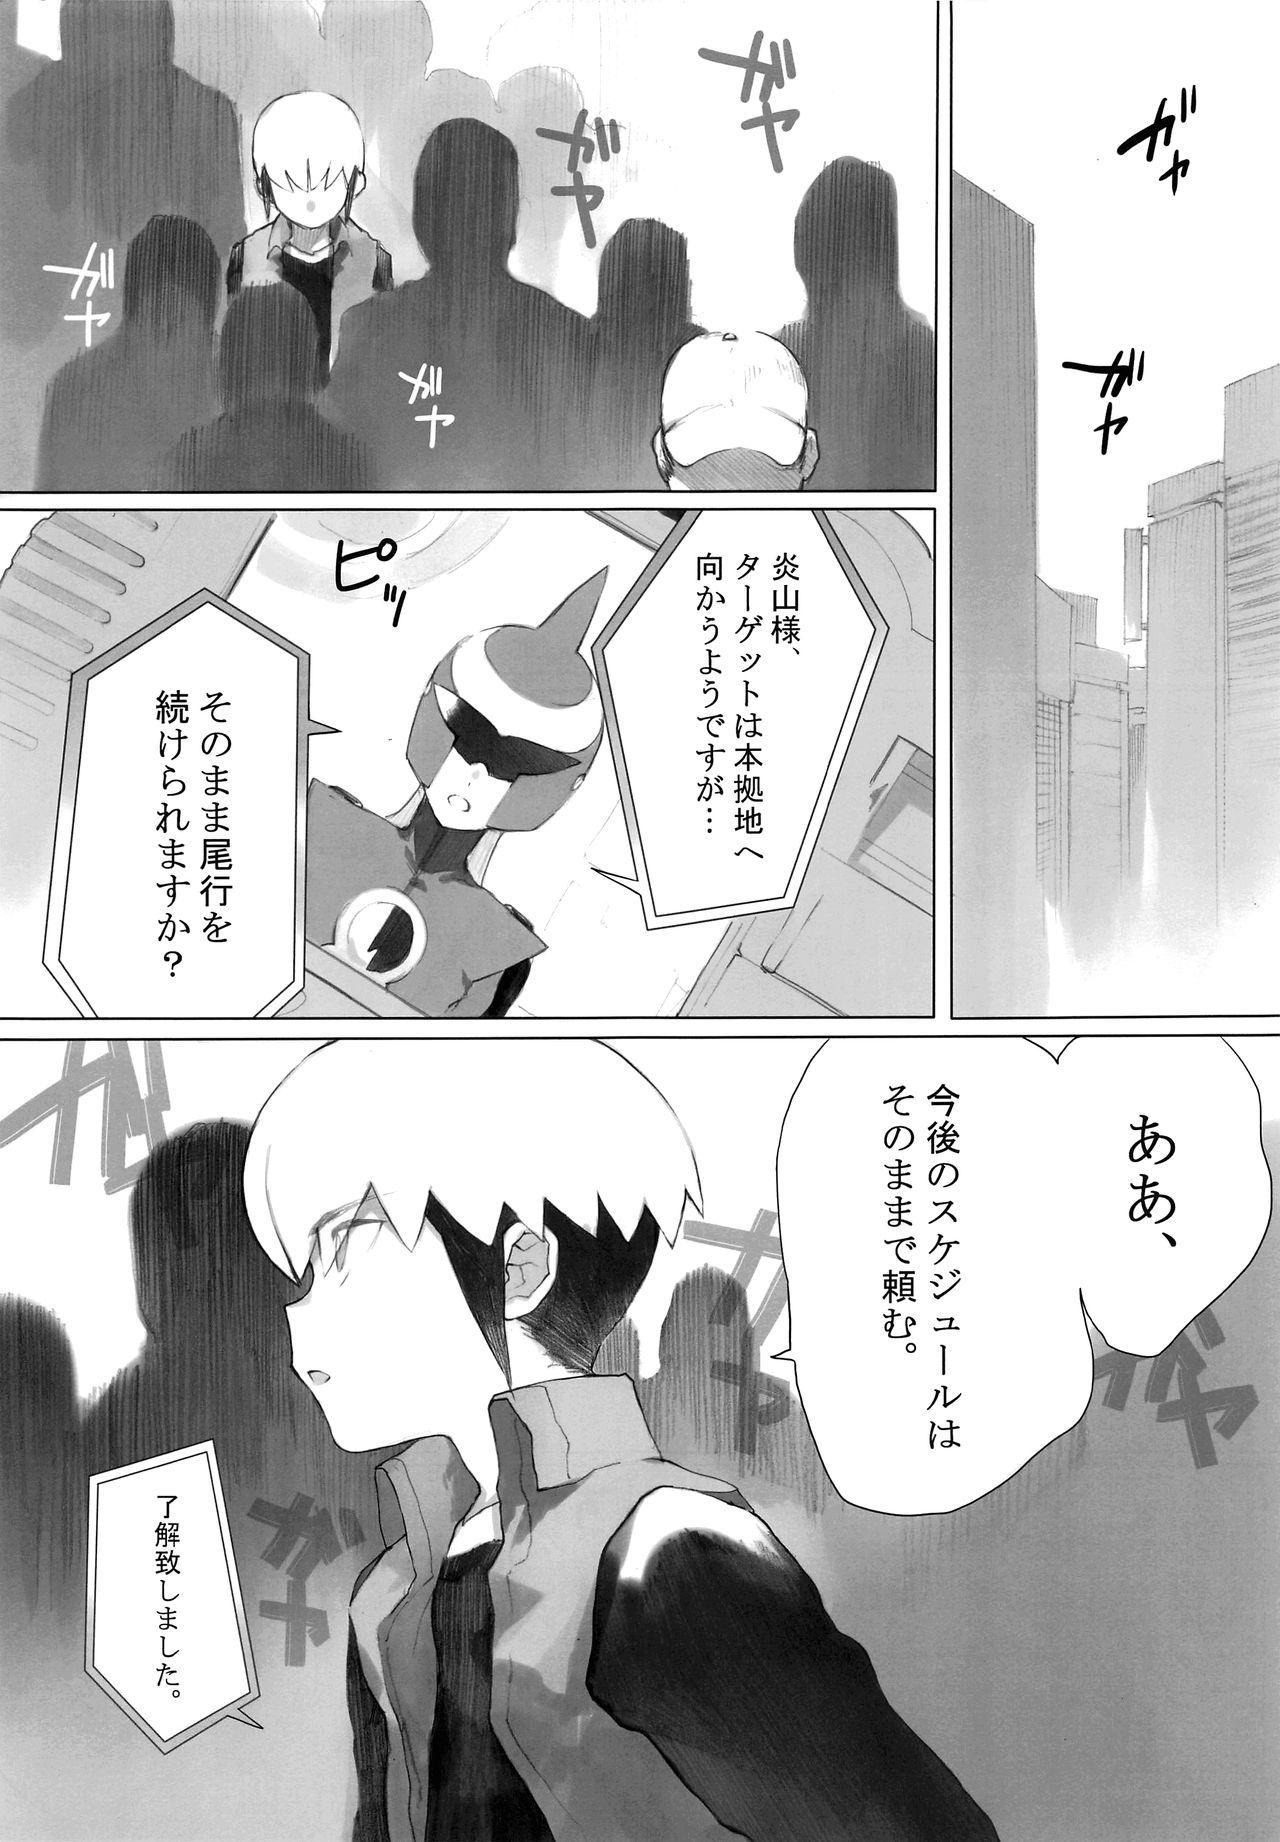 Puta Netsu + Honoo Mobure Bon - Megaman battle network Long - Page 2